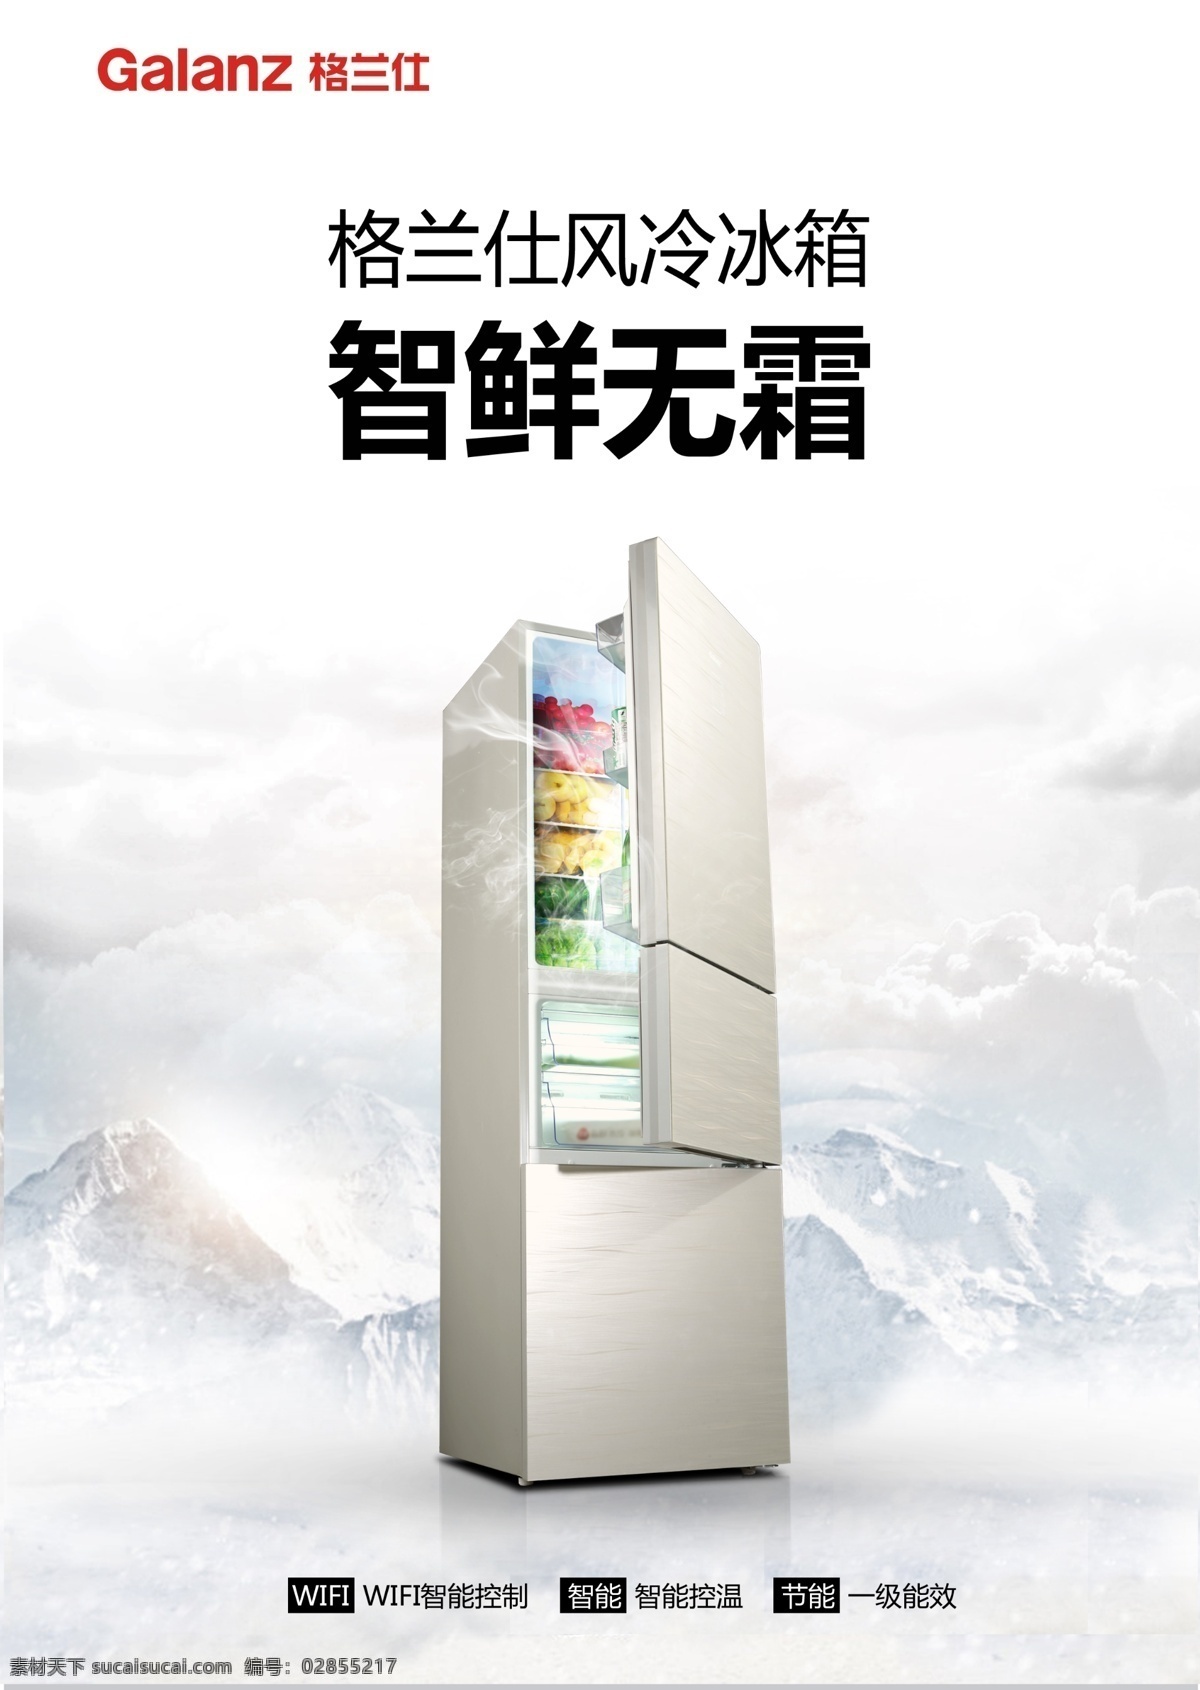 冰箱杂志海报 冰箱杂志 冰箱海报 冰箱 杂志 海报 风冷 变频 智能 wifi 烟雾 水果 三门 白色